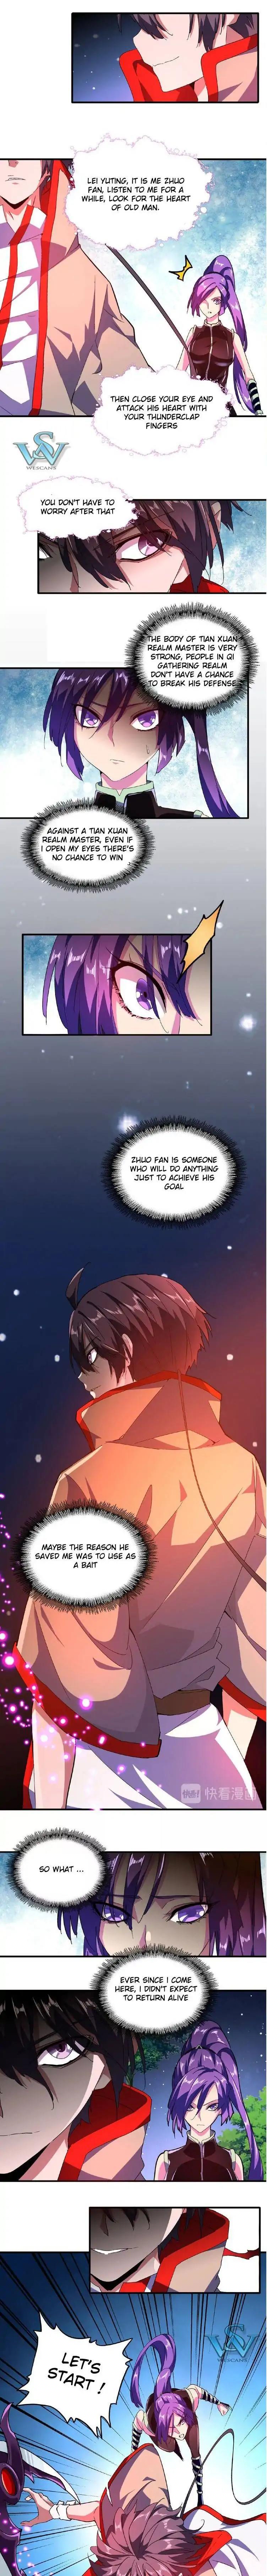 Magic Emperor Chapter 29 page 3 - Mangakakalot